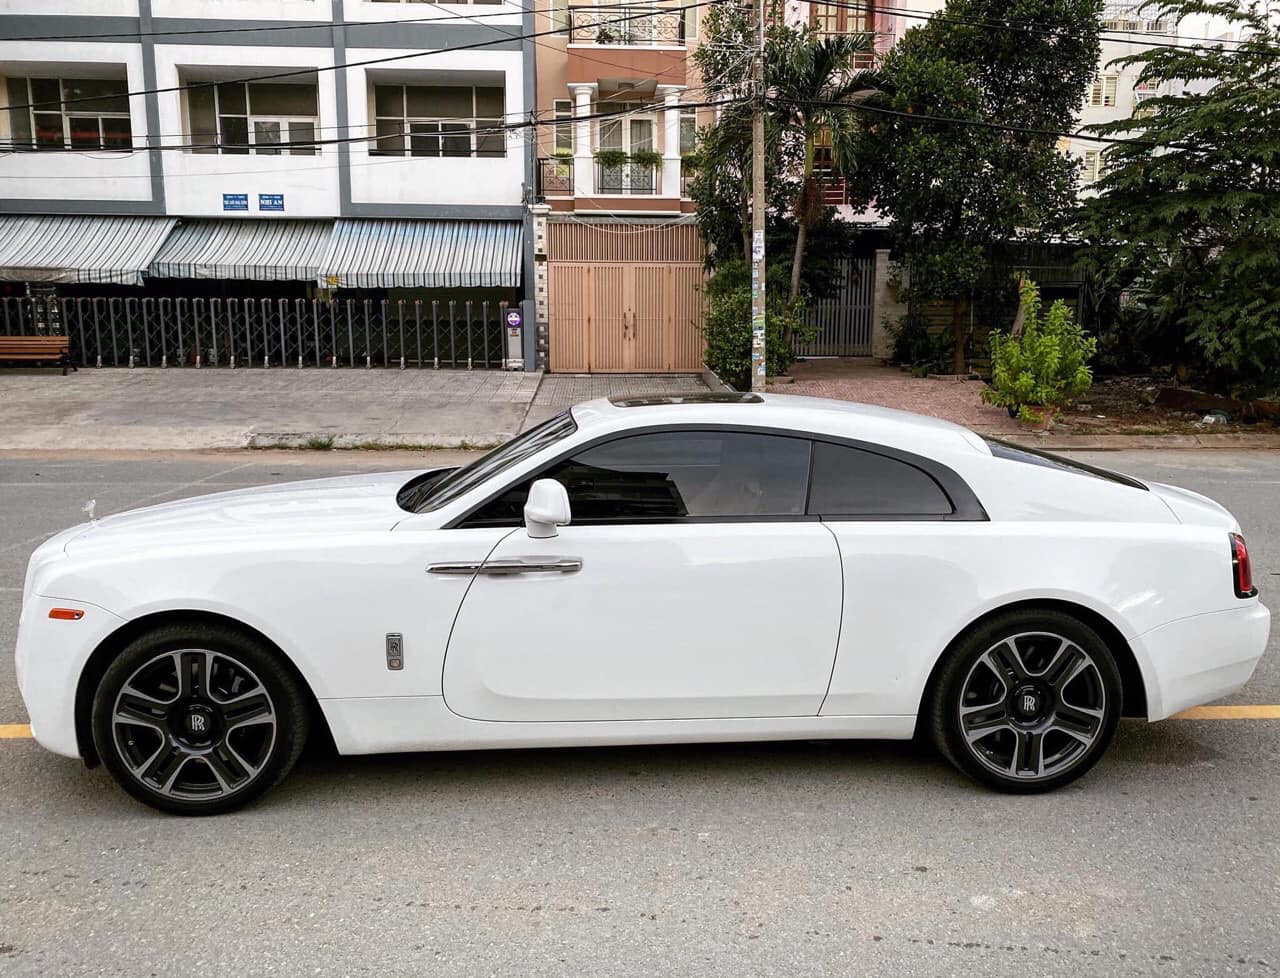 Hàng hiếm Rolls-Royce Wraith được rao bán cùng lời chia sẻ: Mua mới hơn 30 tỷ, bán cũ hơn 13 tỷ - Ảnh 2.